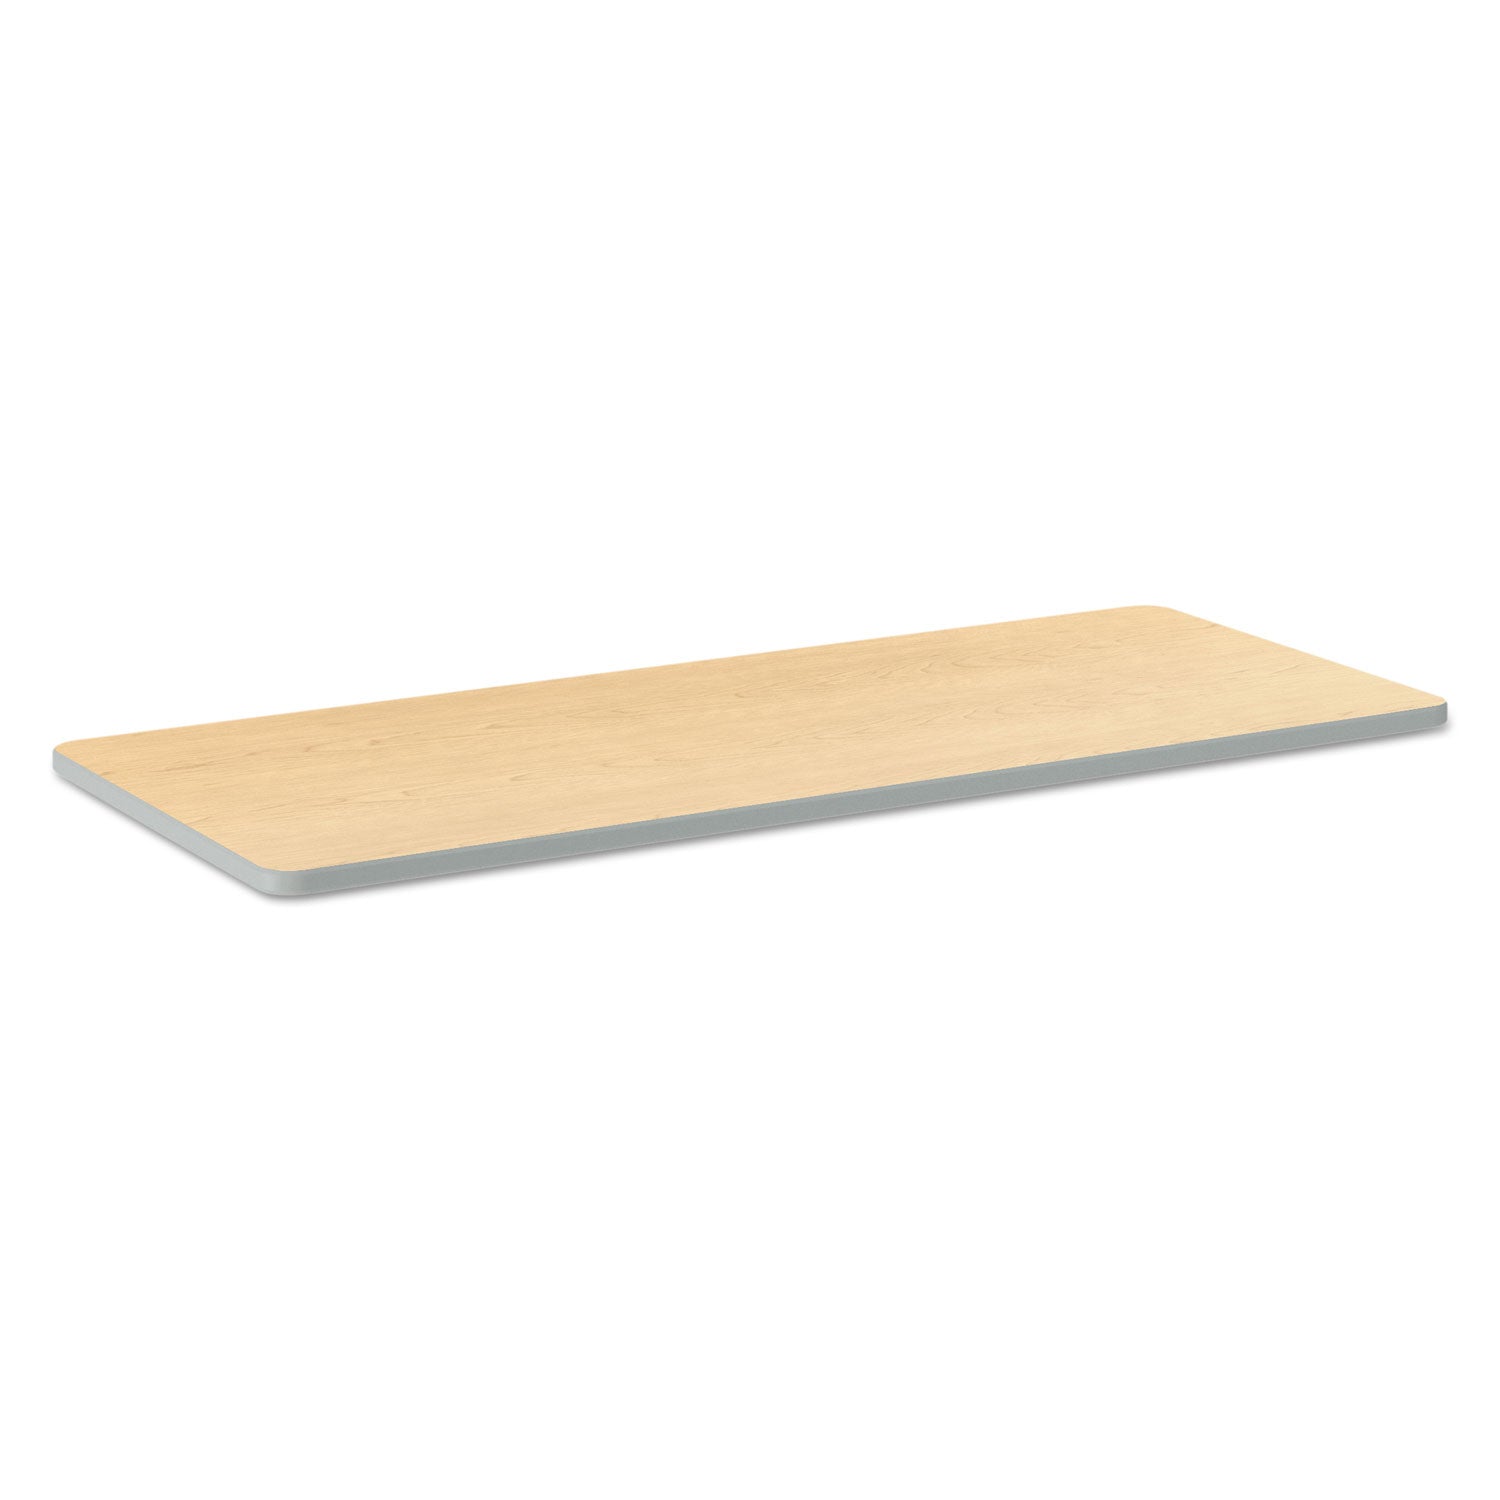 build-rectangle-shape-table-top-60w-x-24d-natural-maple_hontr2460endk - 1